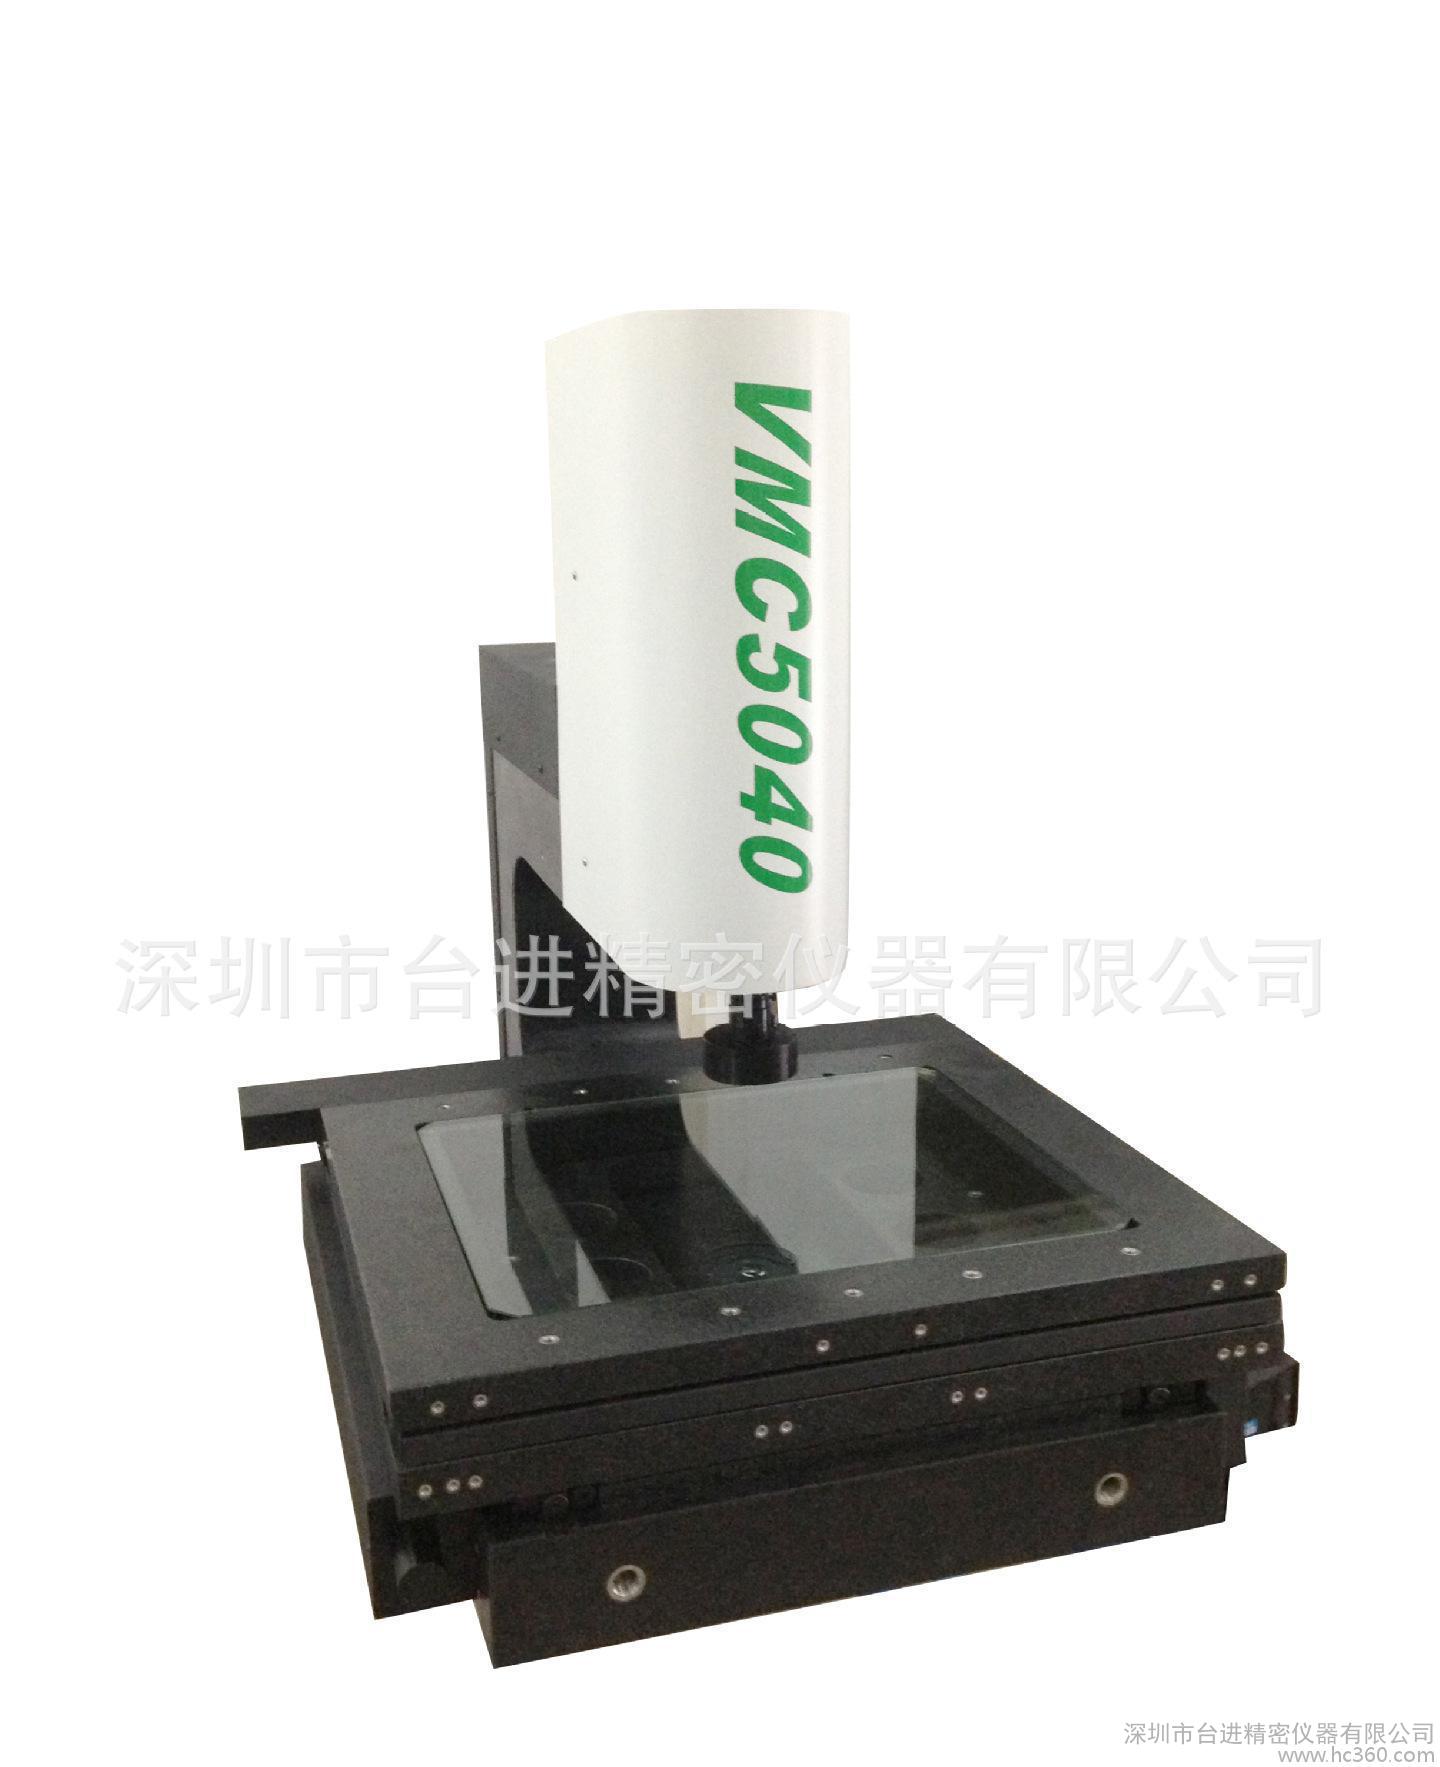 直销 全自动二次元影像测量仪 2.5次元 VMC-5040